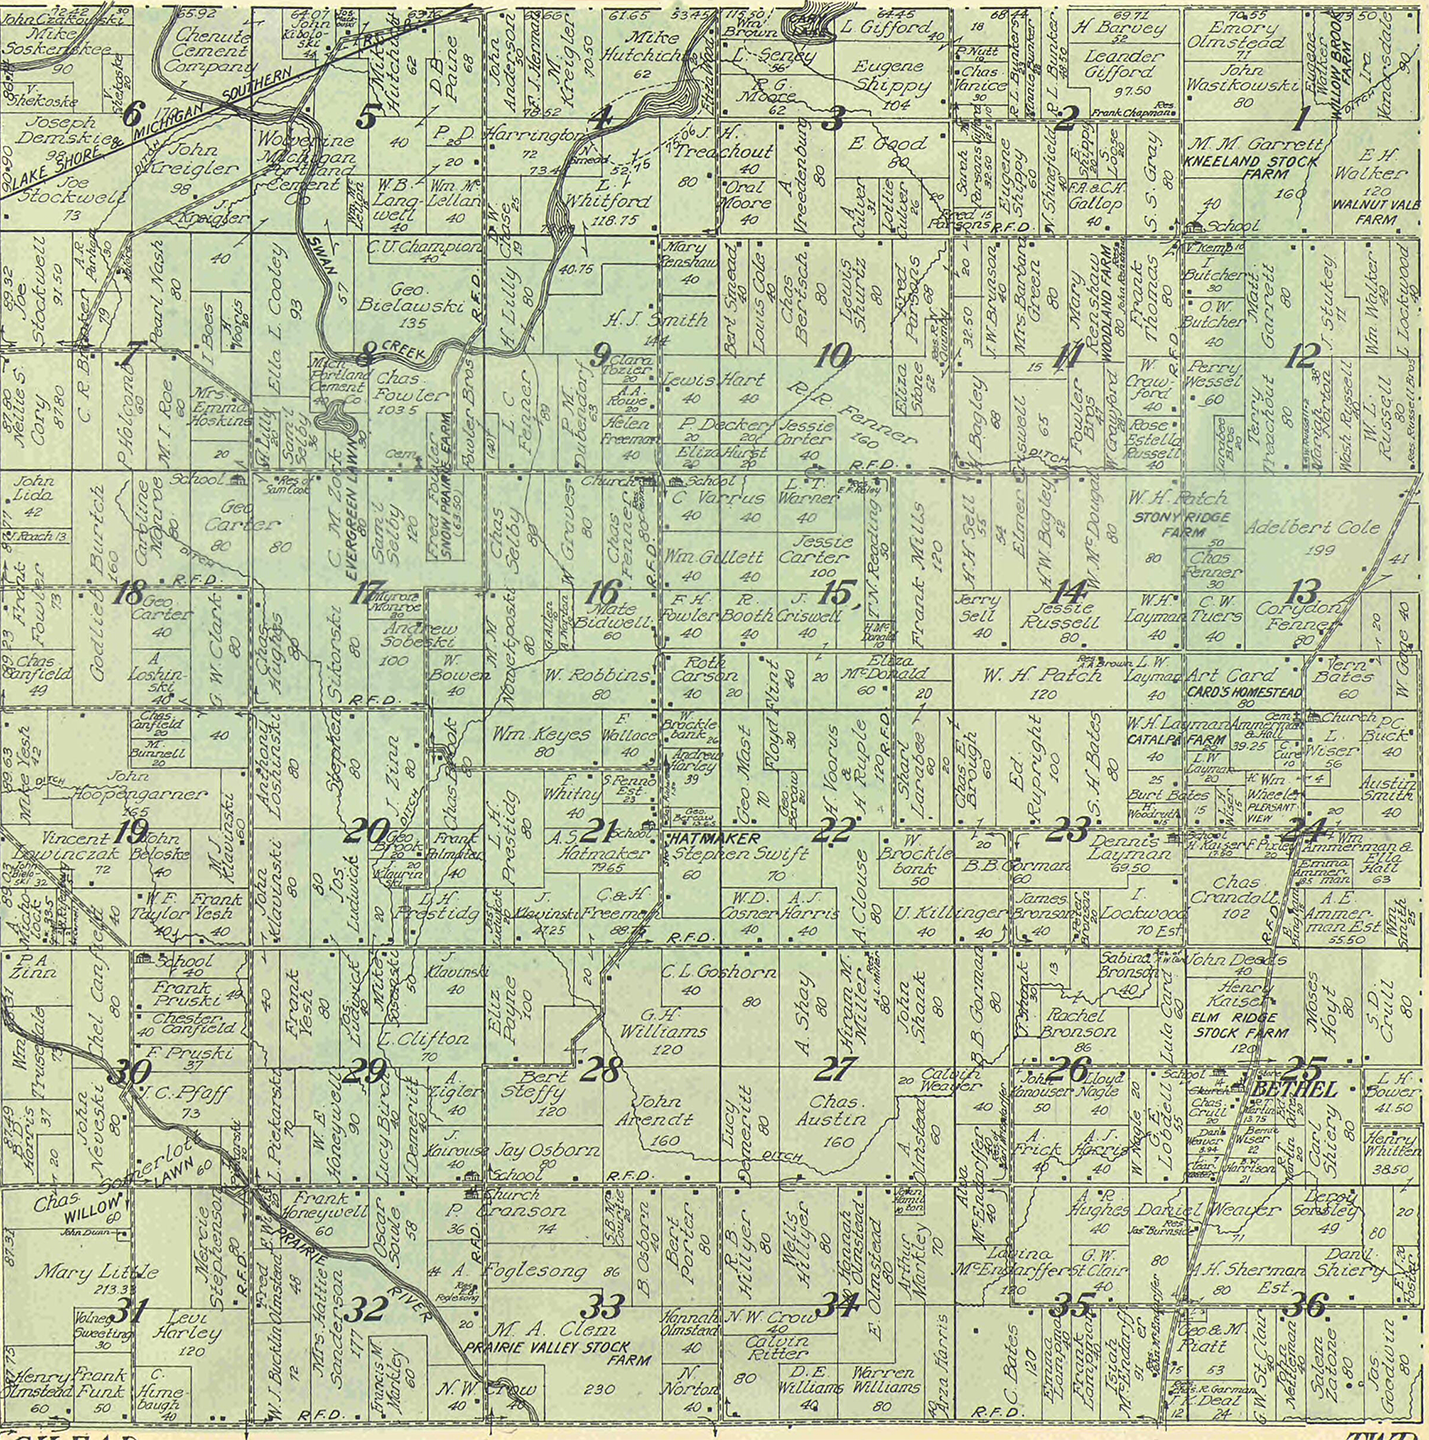 1915 Bethel Township, Michigan landownership map